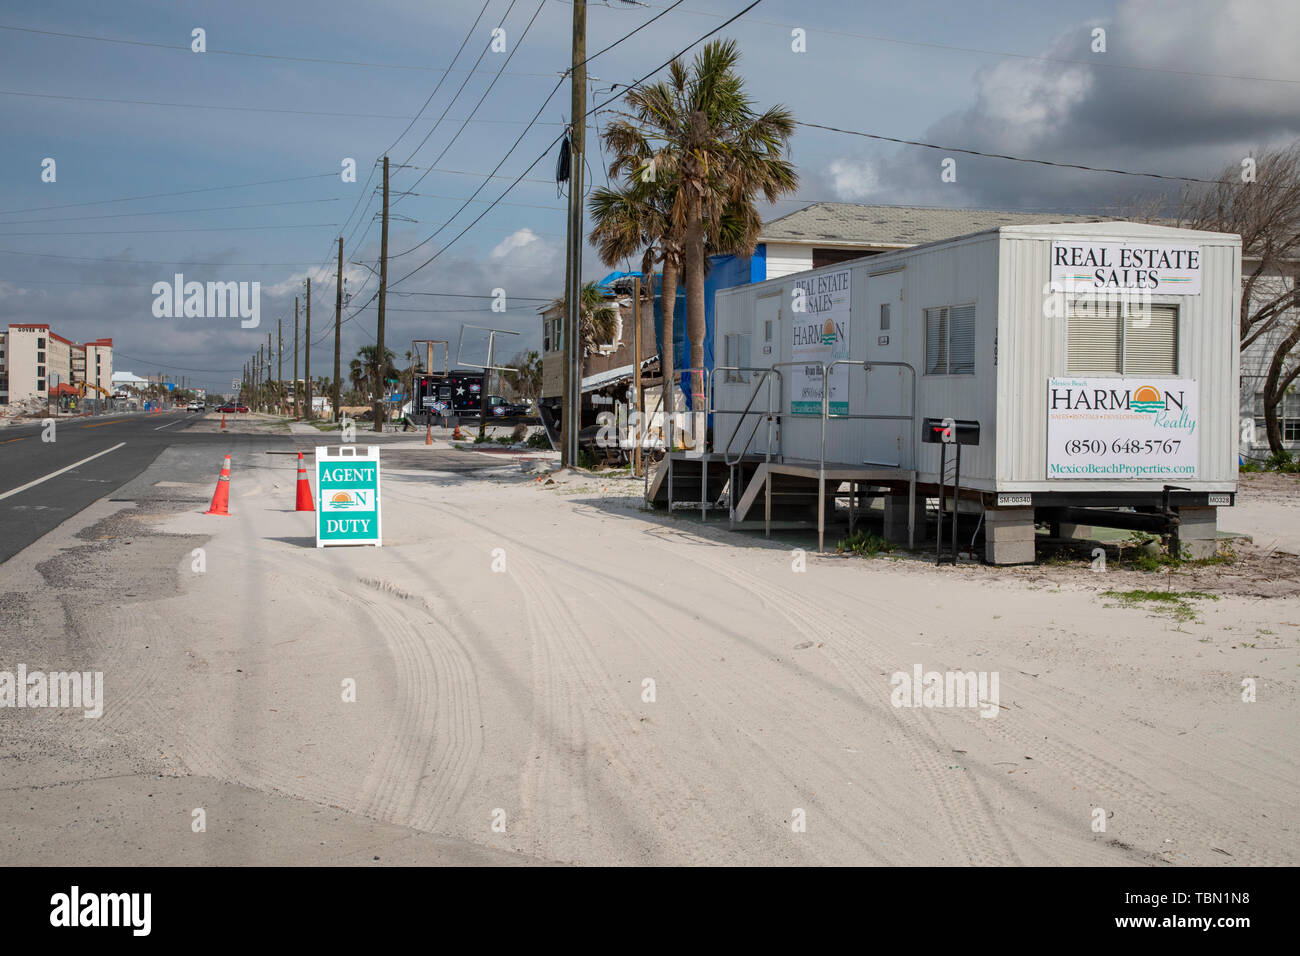 Le Mexique, Floride - Destruction de l'ouragan Michael est répandu sept mois après la tempête de catégorie 5 a frappé la Floride. Un vrai est Banque D'Images